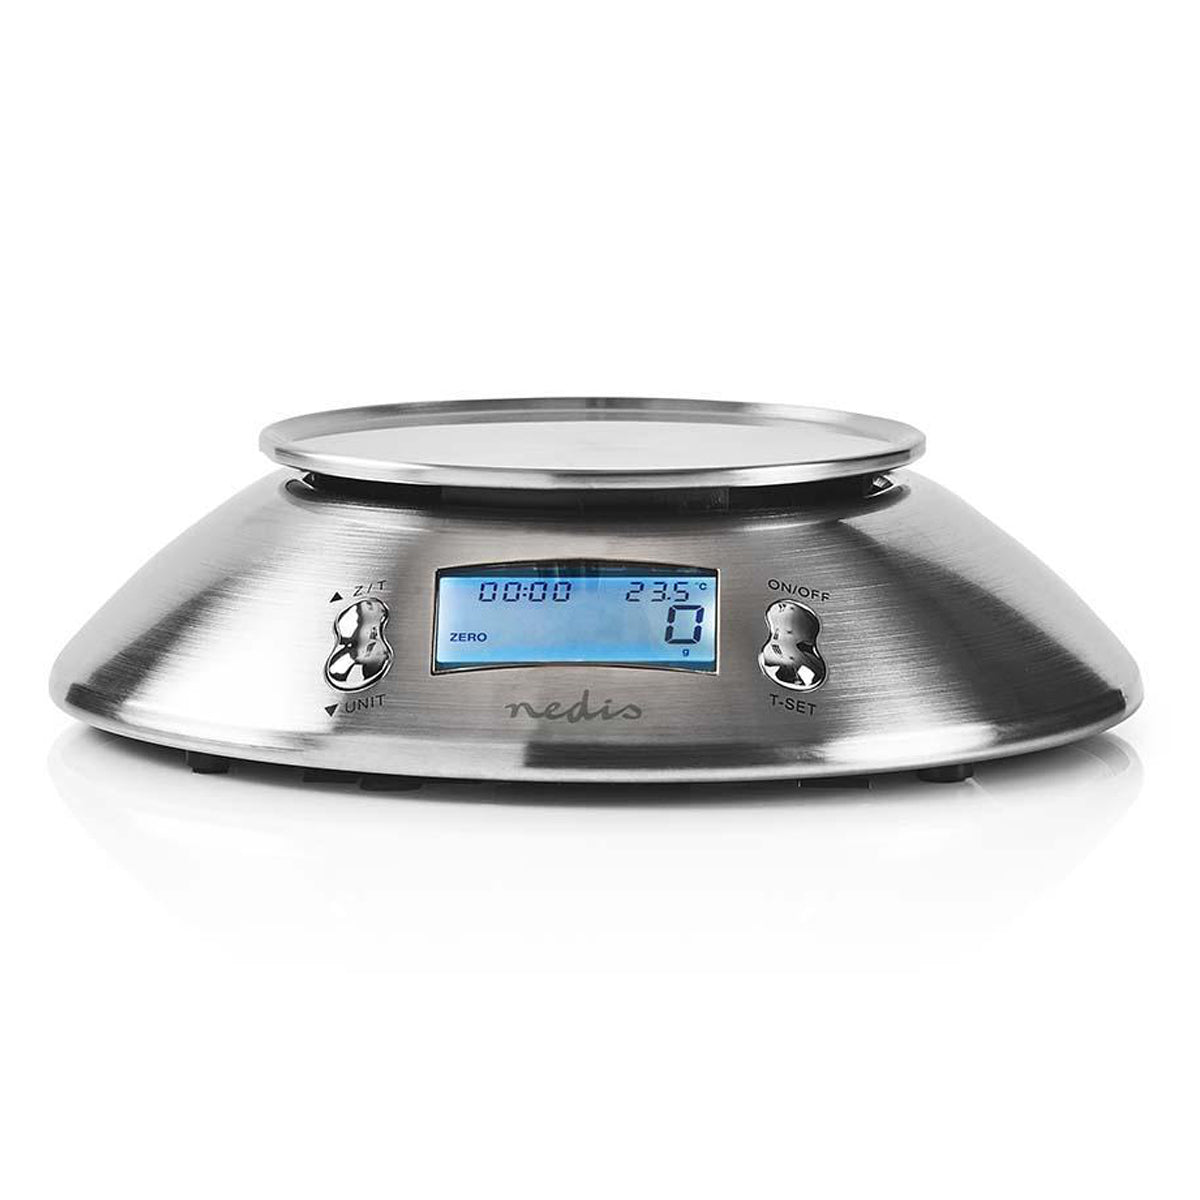 Küchenwaage mit Thermometer Timer Funktion und Schüssel Edelstahl Digital Silber